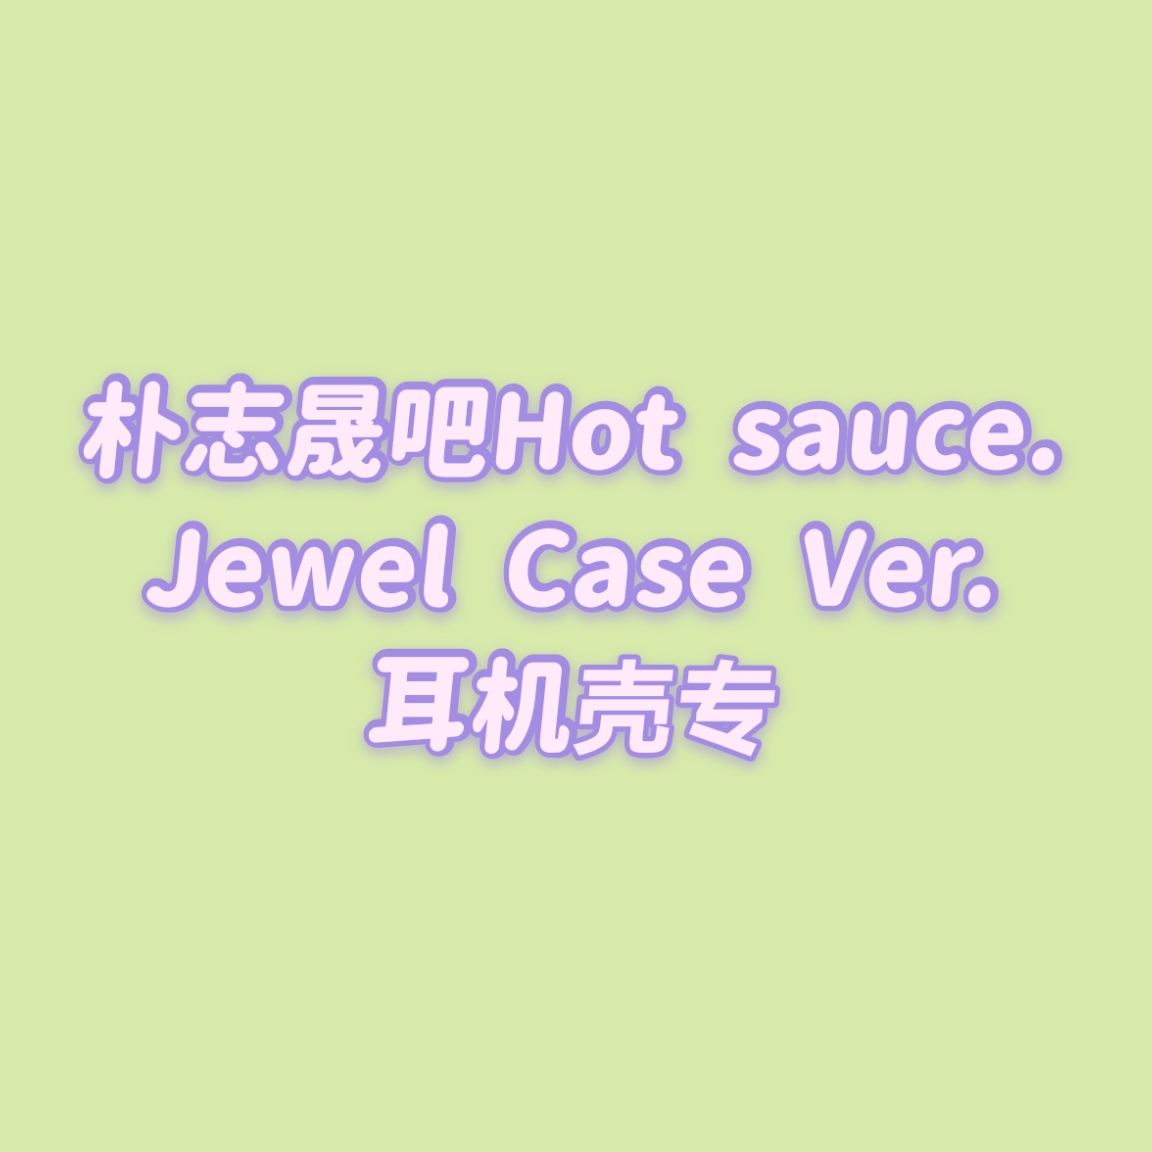 [全款 耳机壳包邮专] [买多张发不同版本] NCT DREAM - Album Vol.1 [맛 (Hot Sauce)] (Jewel Case Ver.) (随机版本)_朴志晟吧_ParkJiSungBar